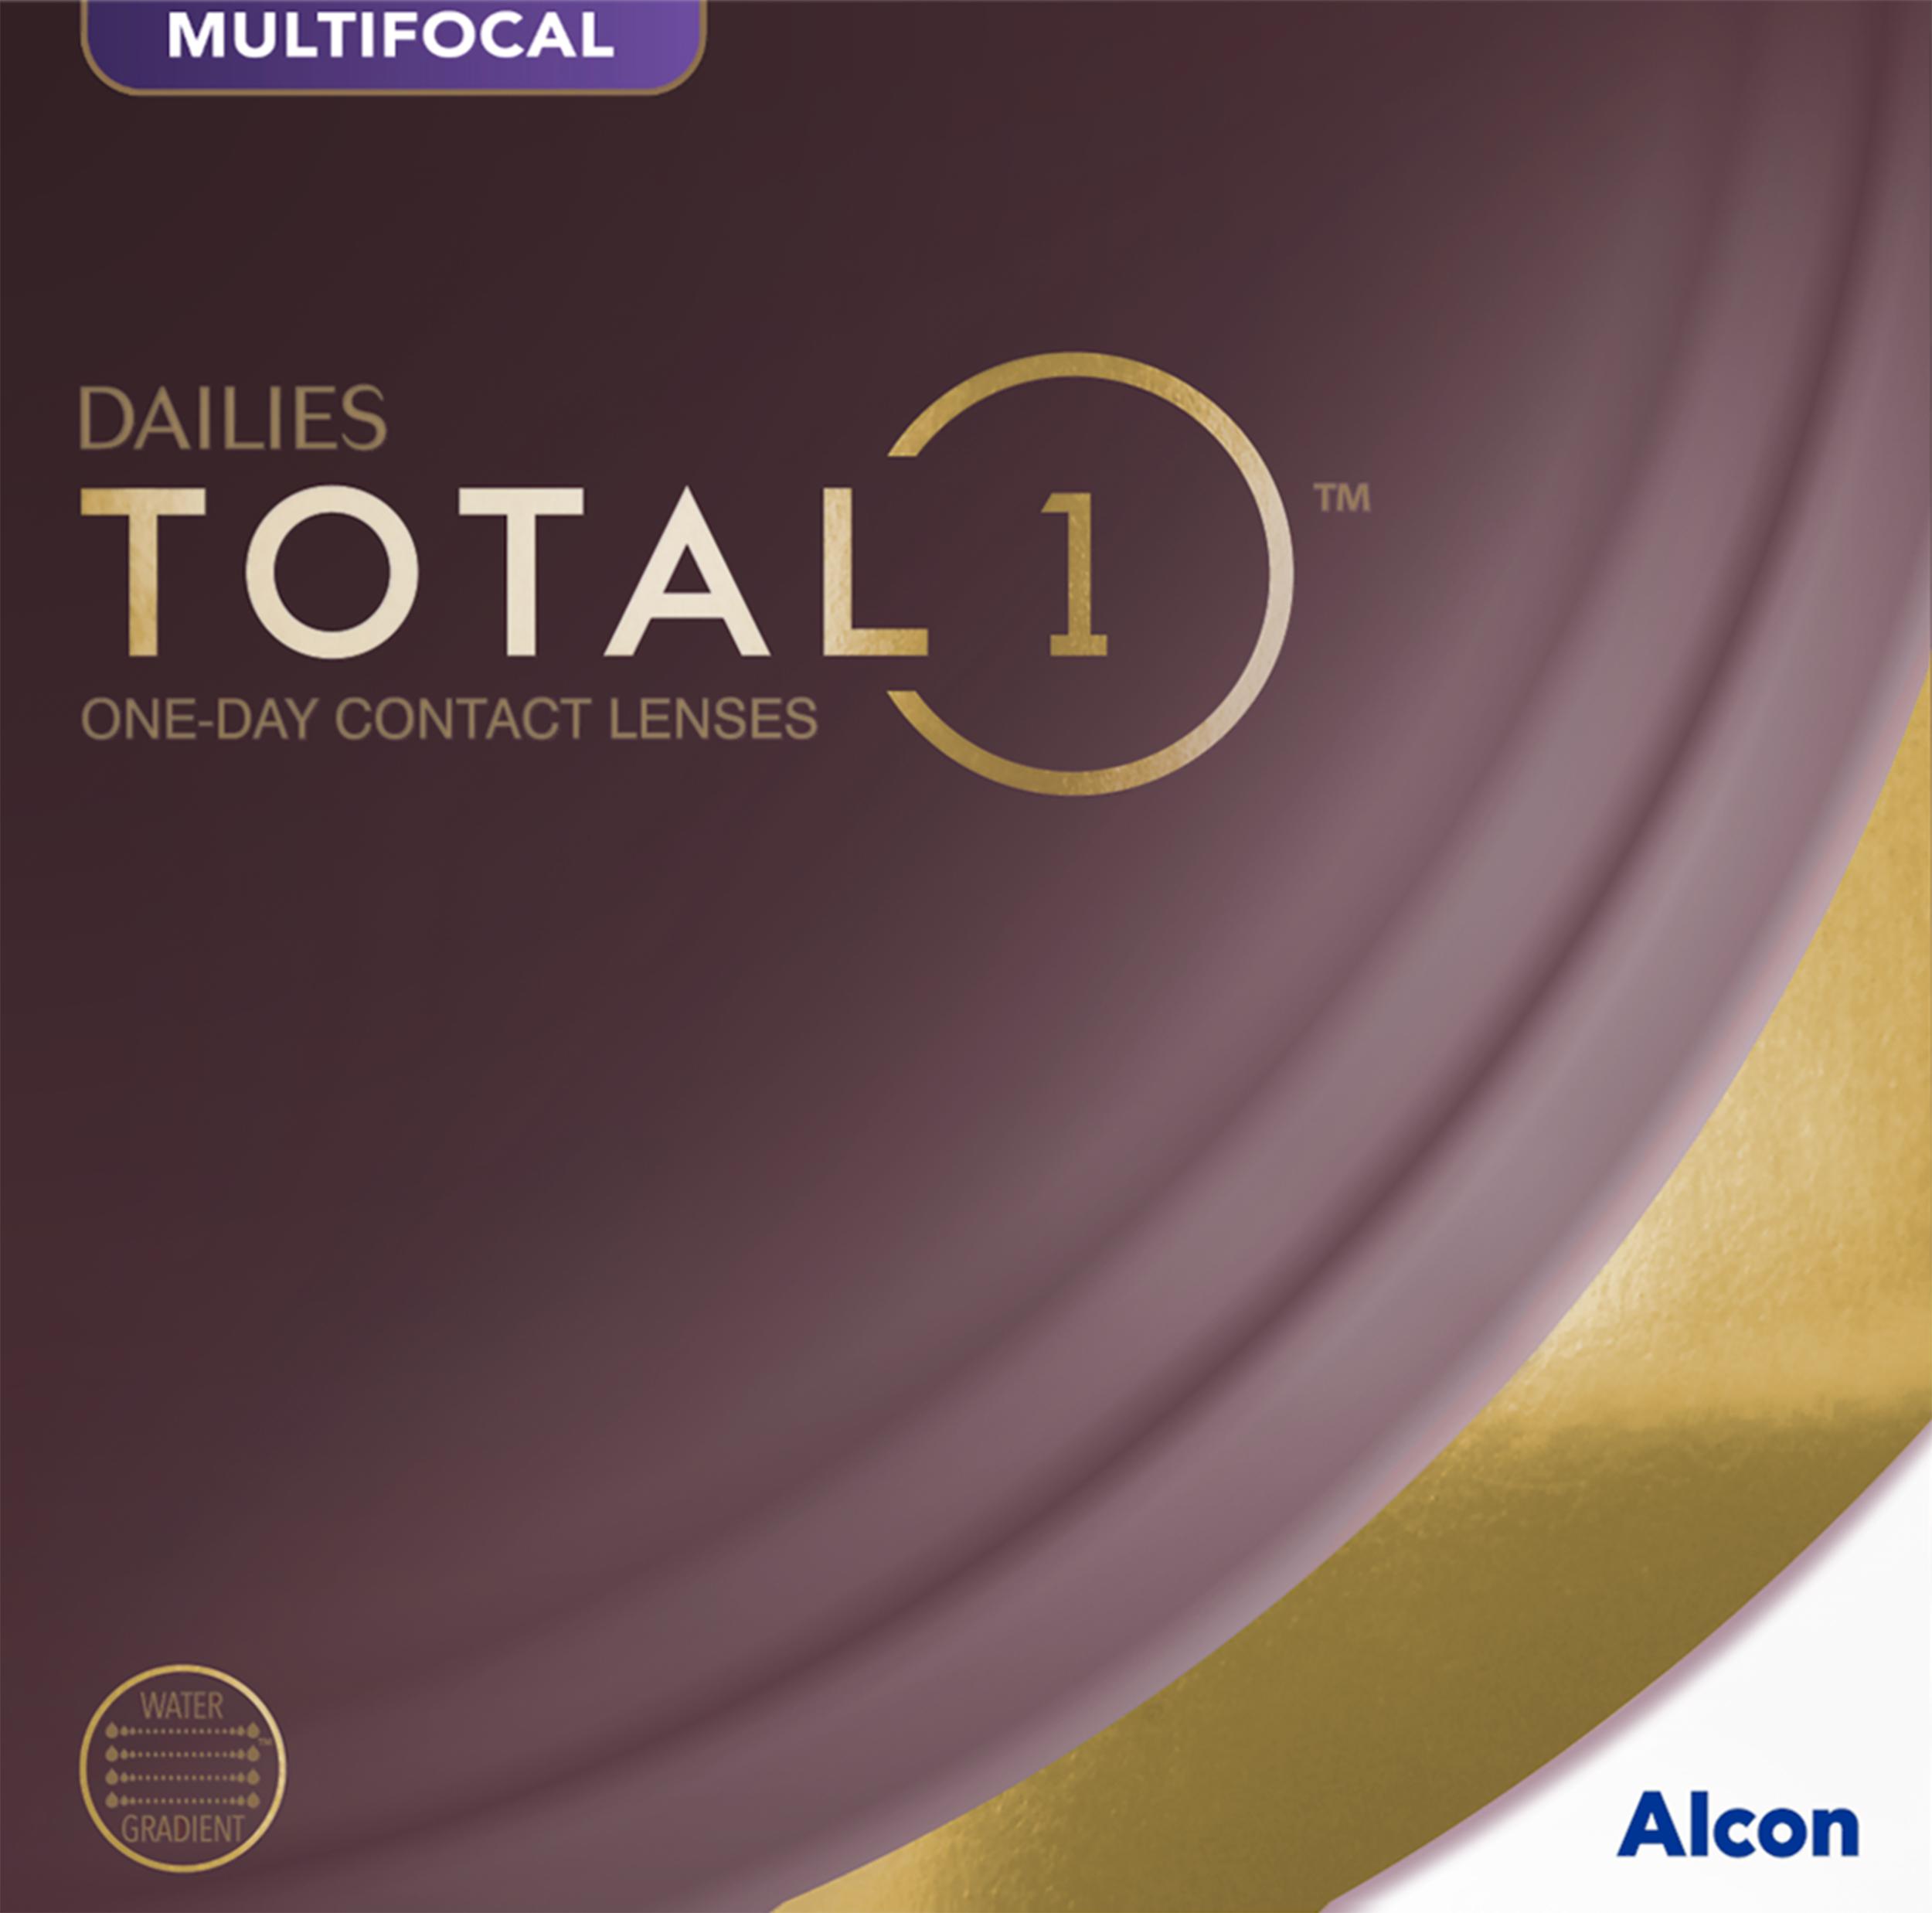 DAILIES Total 1 Multifocal